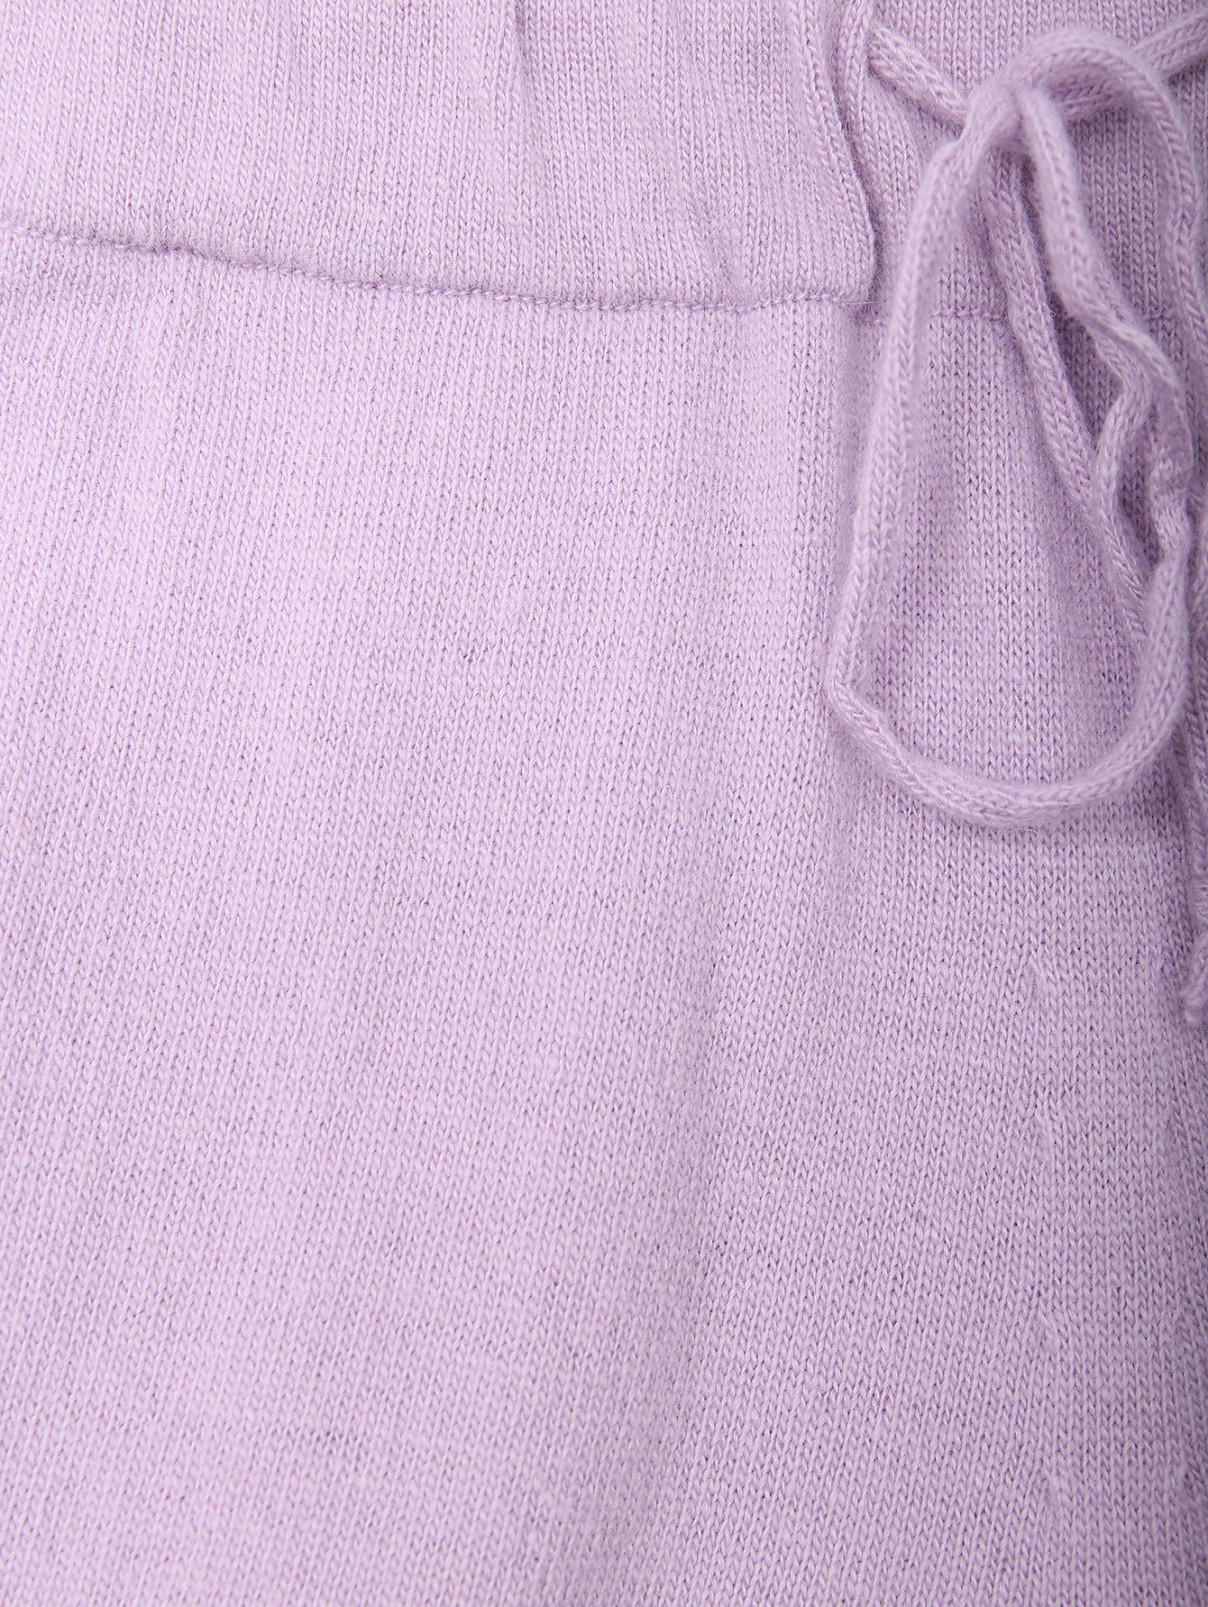 Брюки из шерсти на резинке Shade  –  Деталь  – Цвет:  Фиолетовый